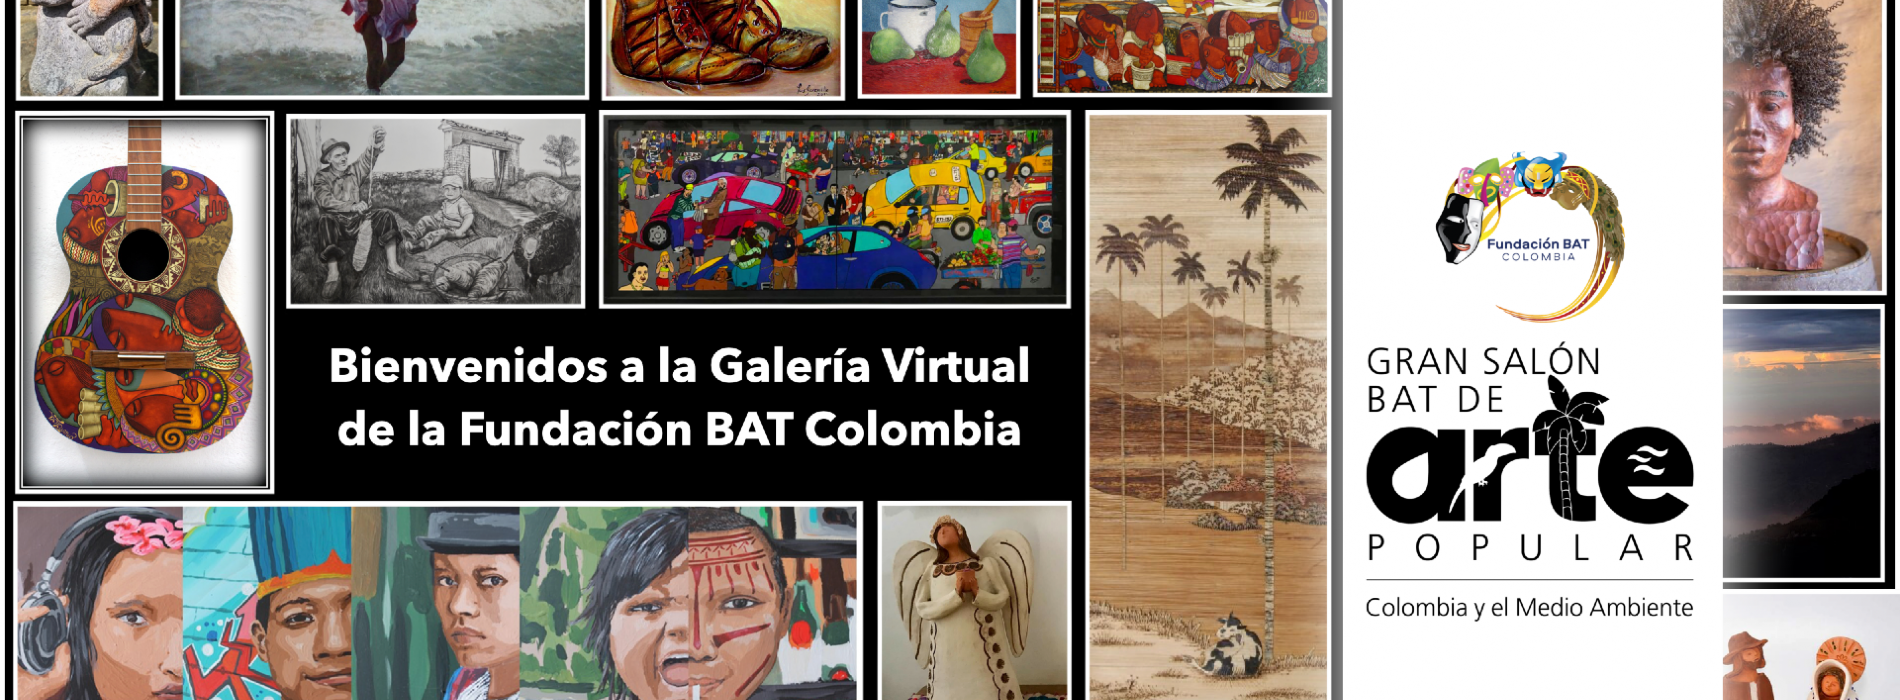 Galería Virtual BAT